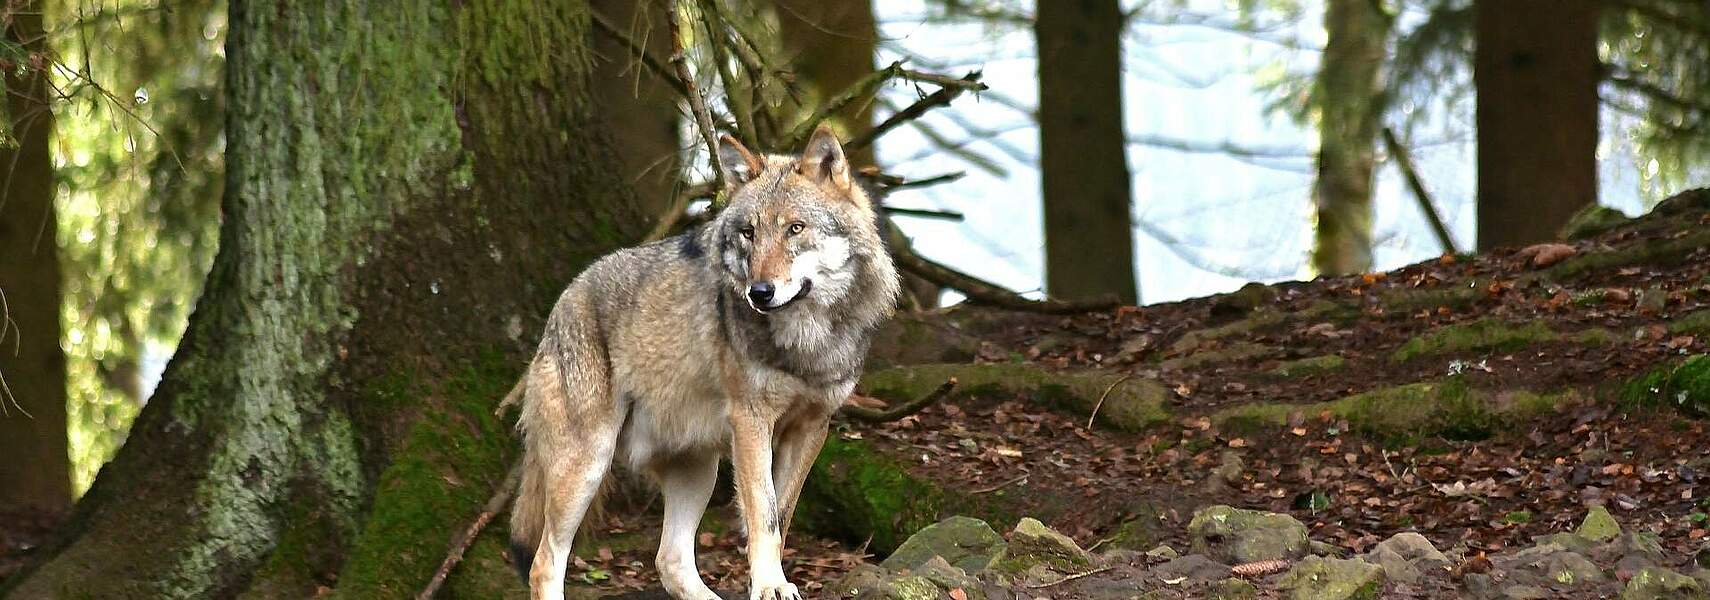 10-Punkte-Programm zur Zukunft des Wolfes in Deutschland